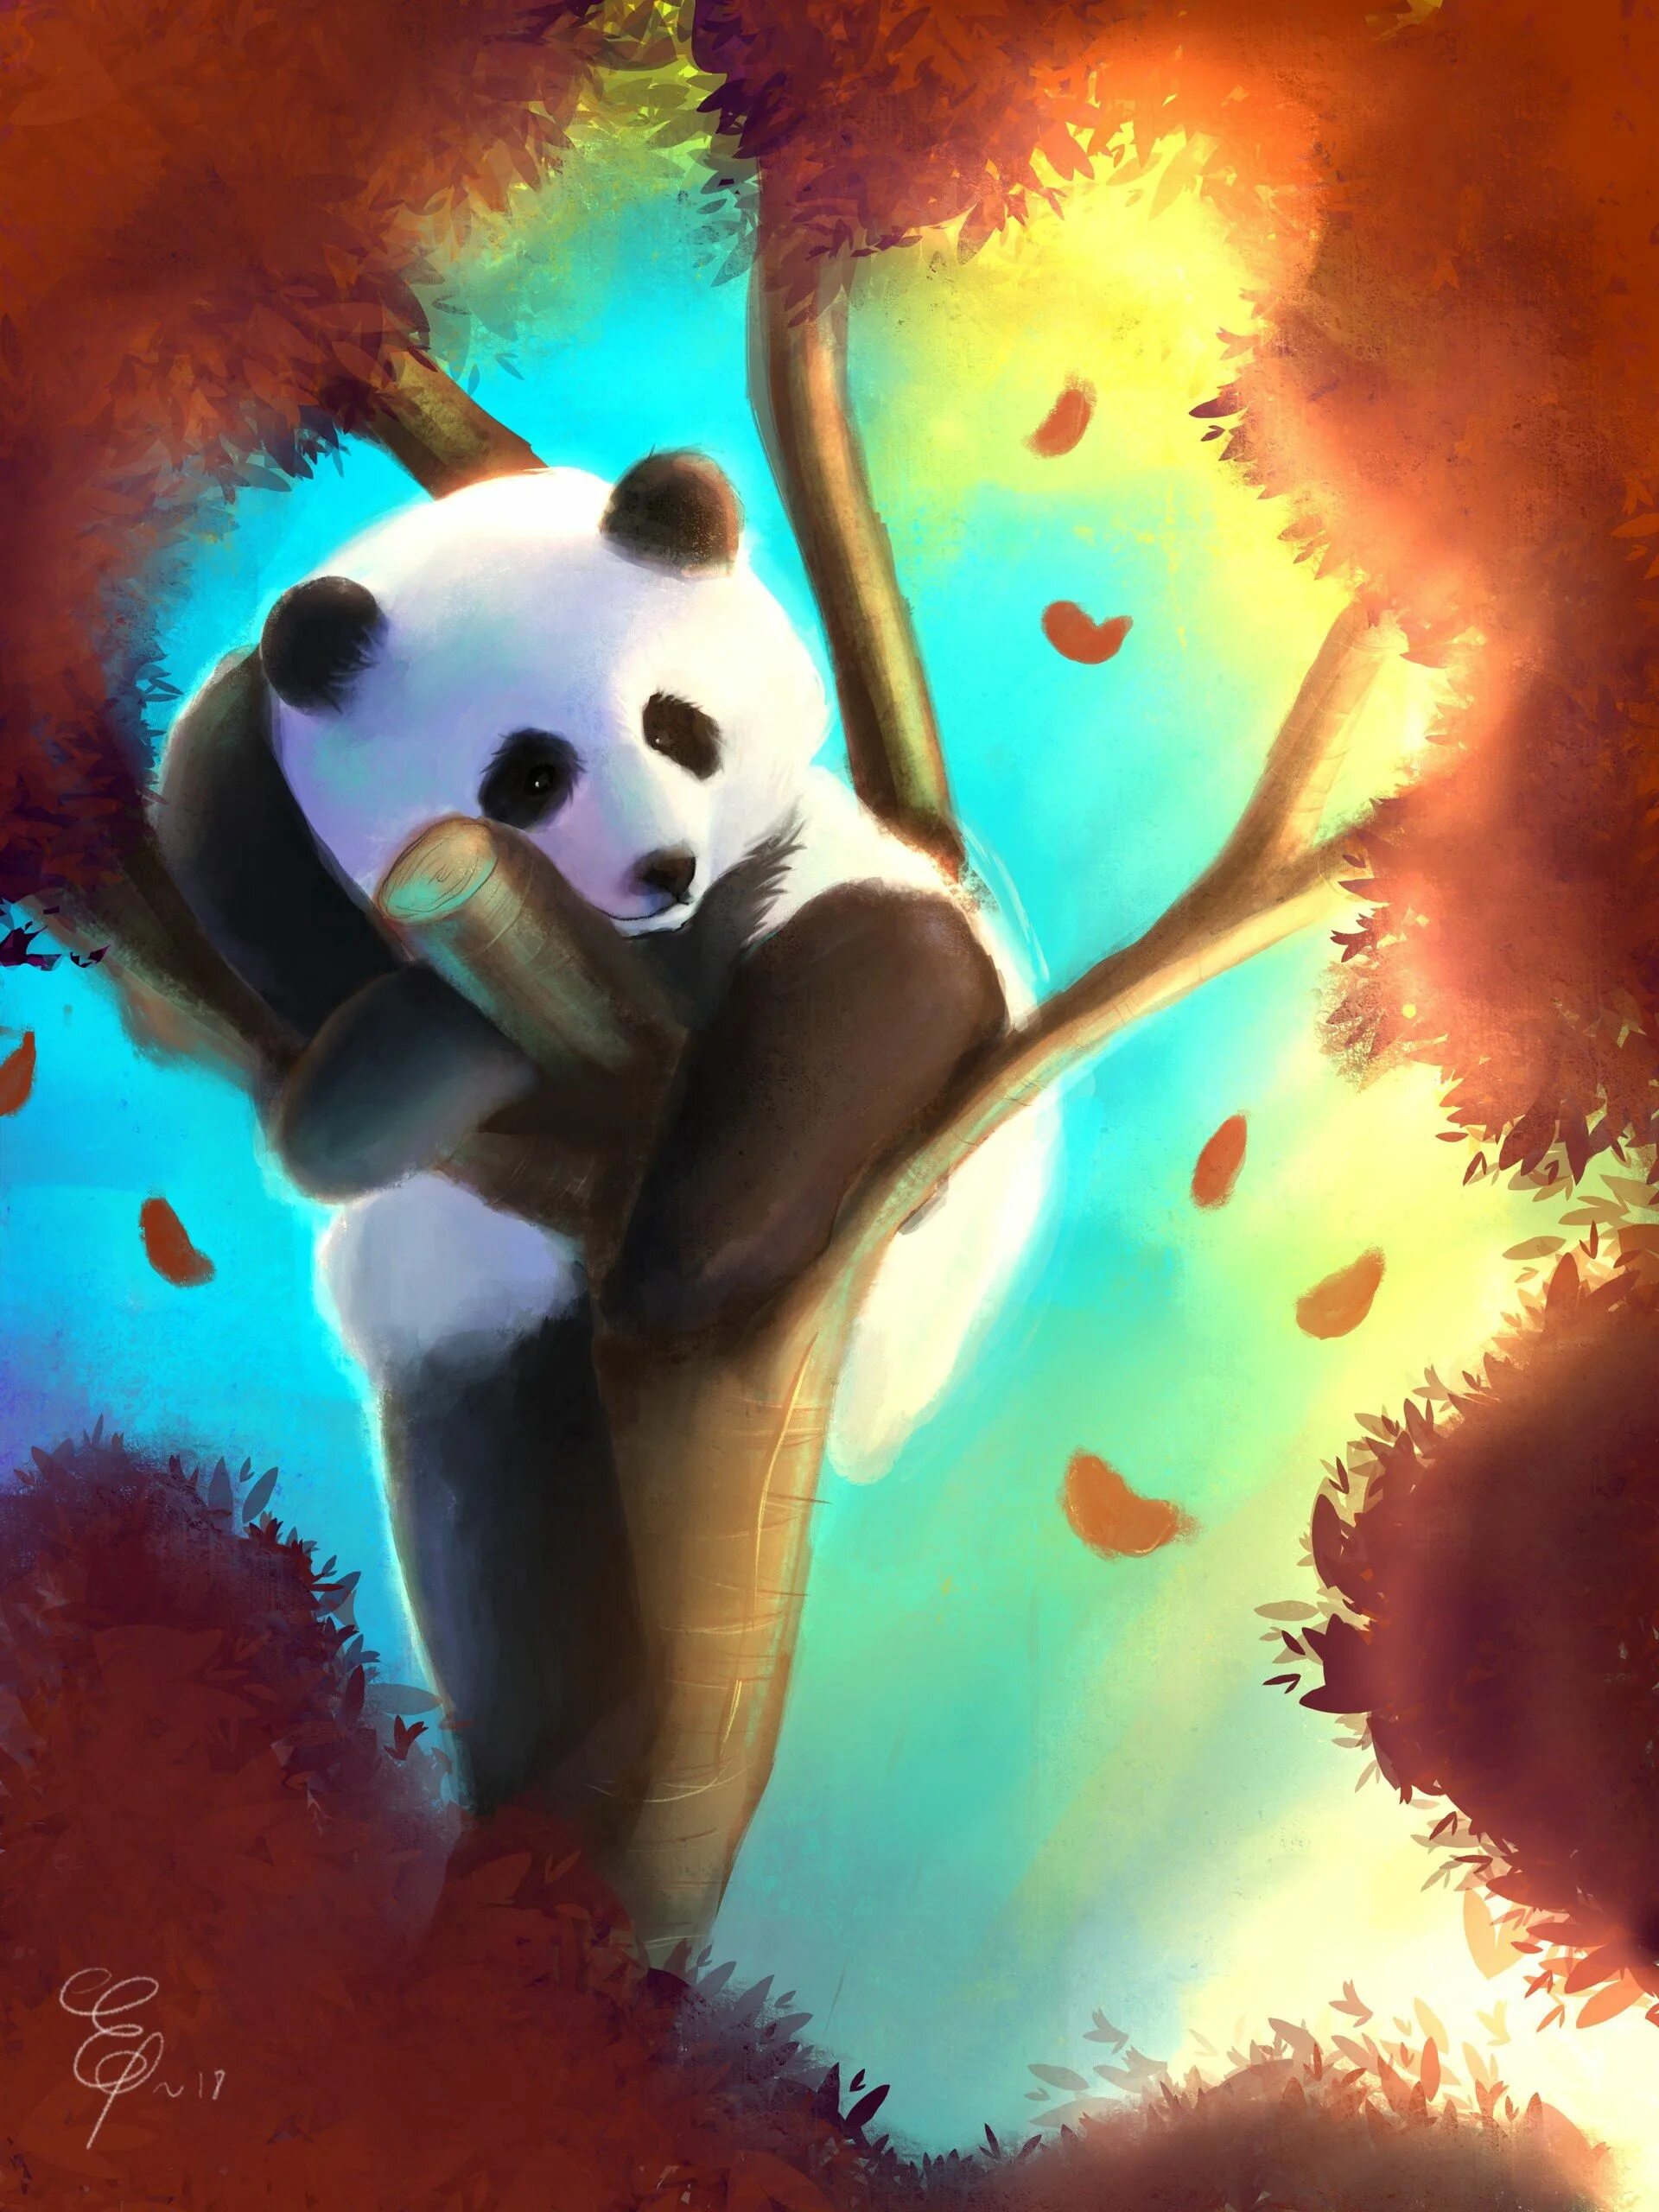 Панда арт. Пандочка арт. Панда акварелью. Панда арт милый. Картинка милой панды